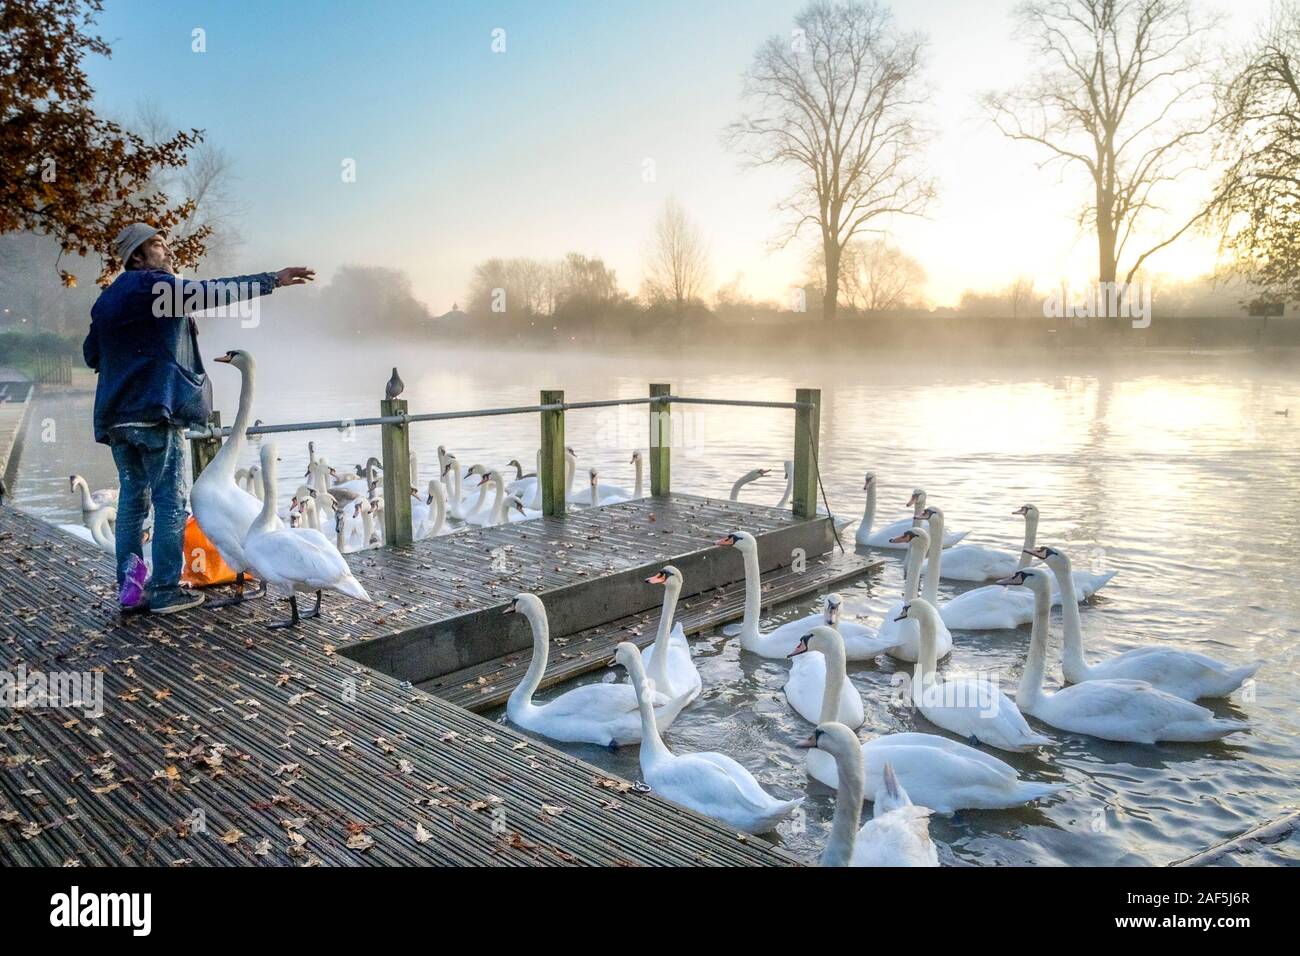 Man feeding Mute swans at dawn, river Avon,  Stratford upon Avon, Warwickshire, England, UK Stock Photo